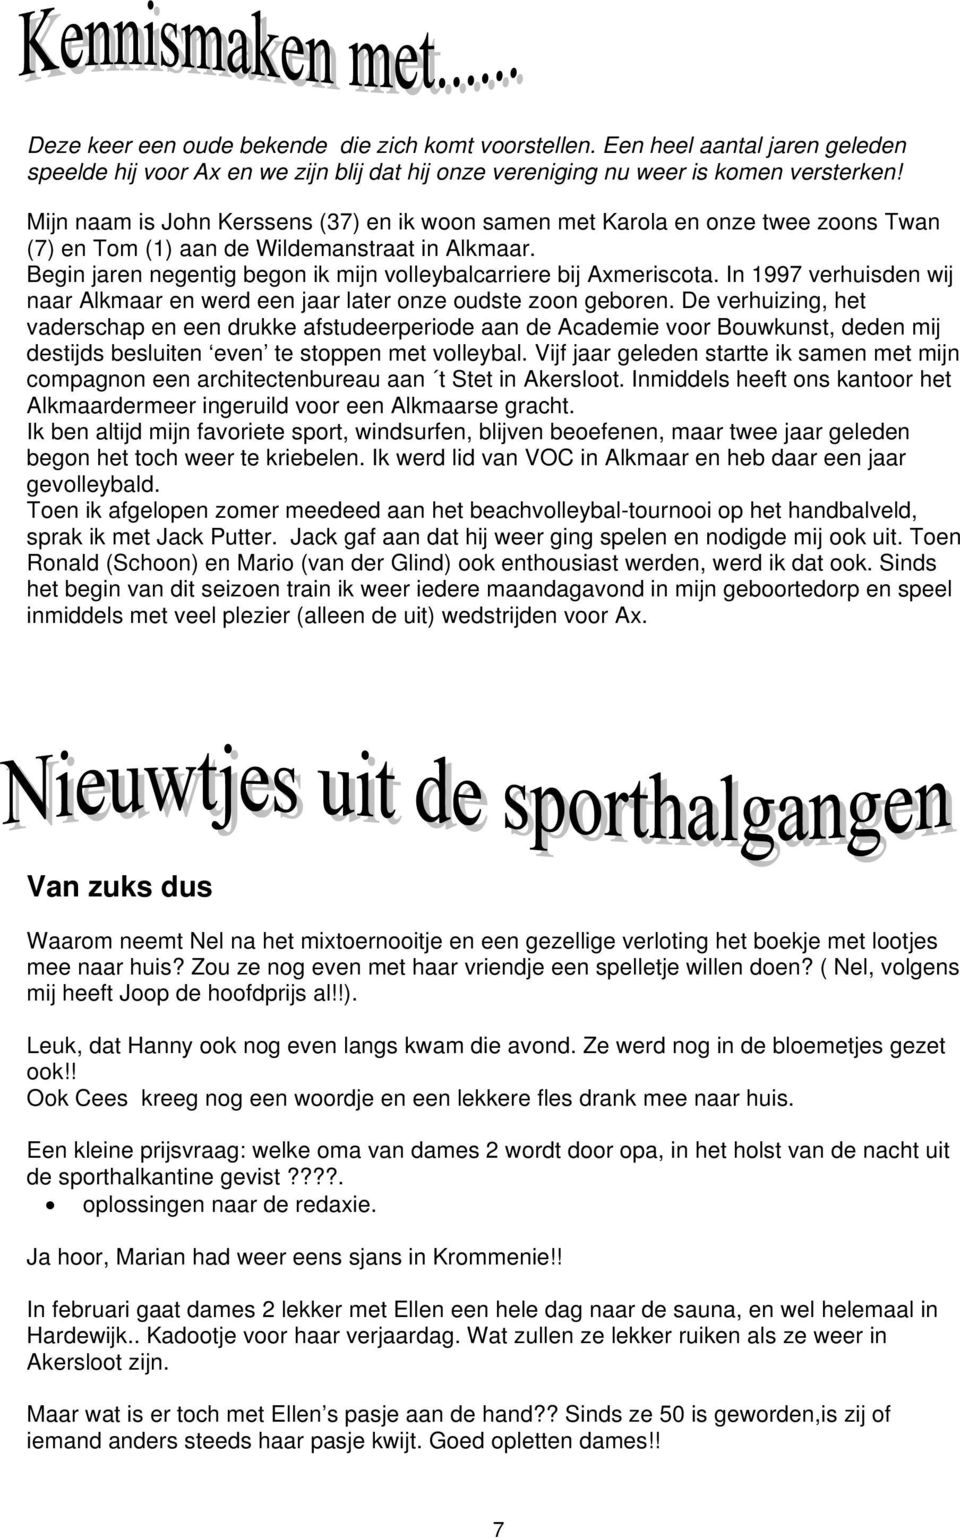 Begin jaren negentig begon ik mijn volleybalcarriere bij Axmeriscota. In 1997 verhuisden wij naar Alkmaar en werd een jaar later onze oudste zoon geboren.